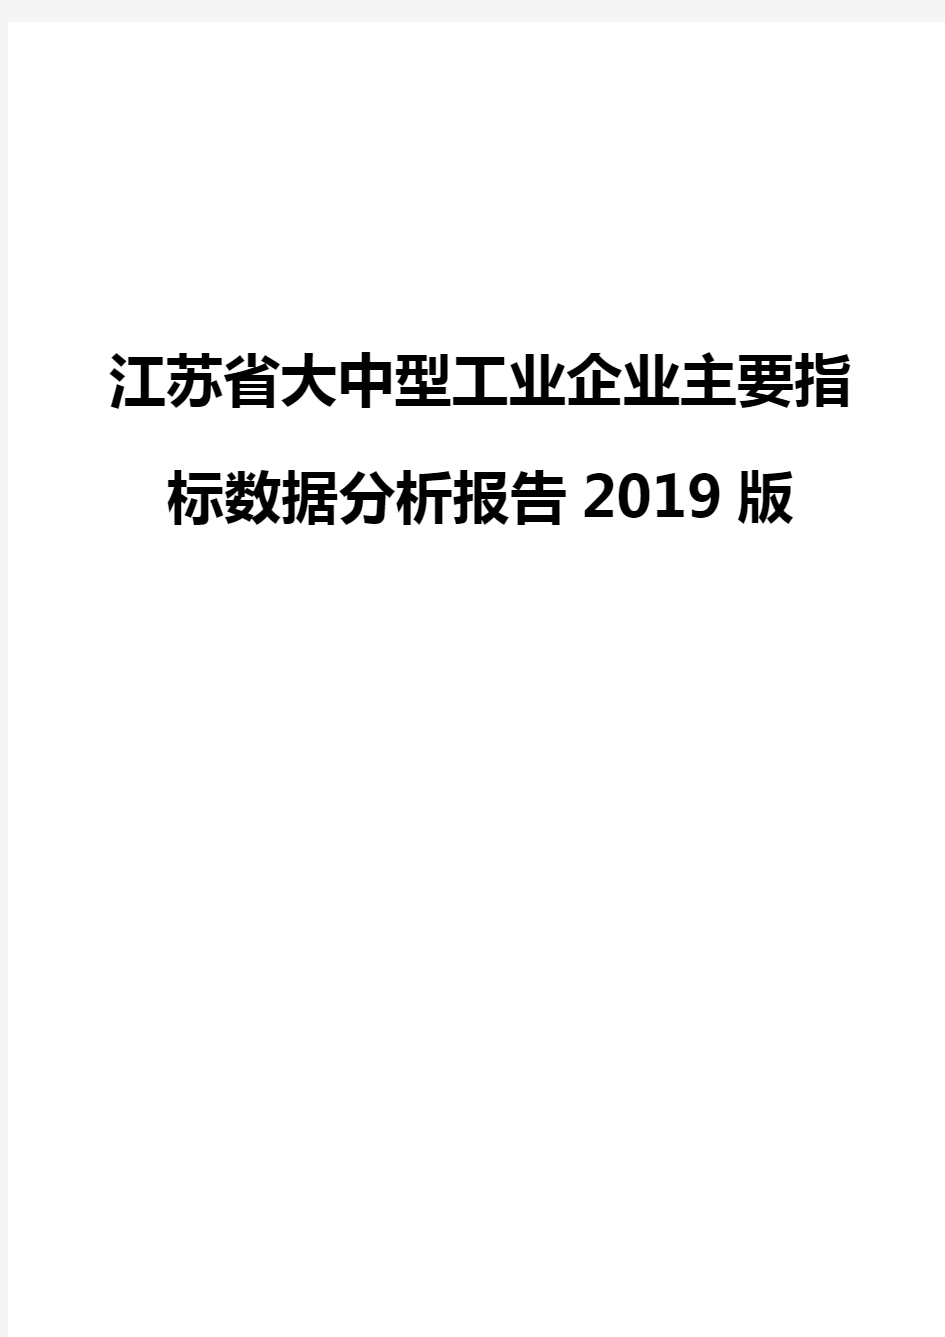 江苏省大中型工业企业主要指标数据分析报告2019版